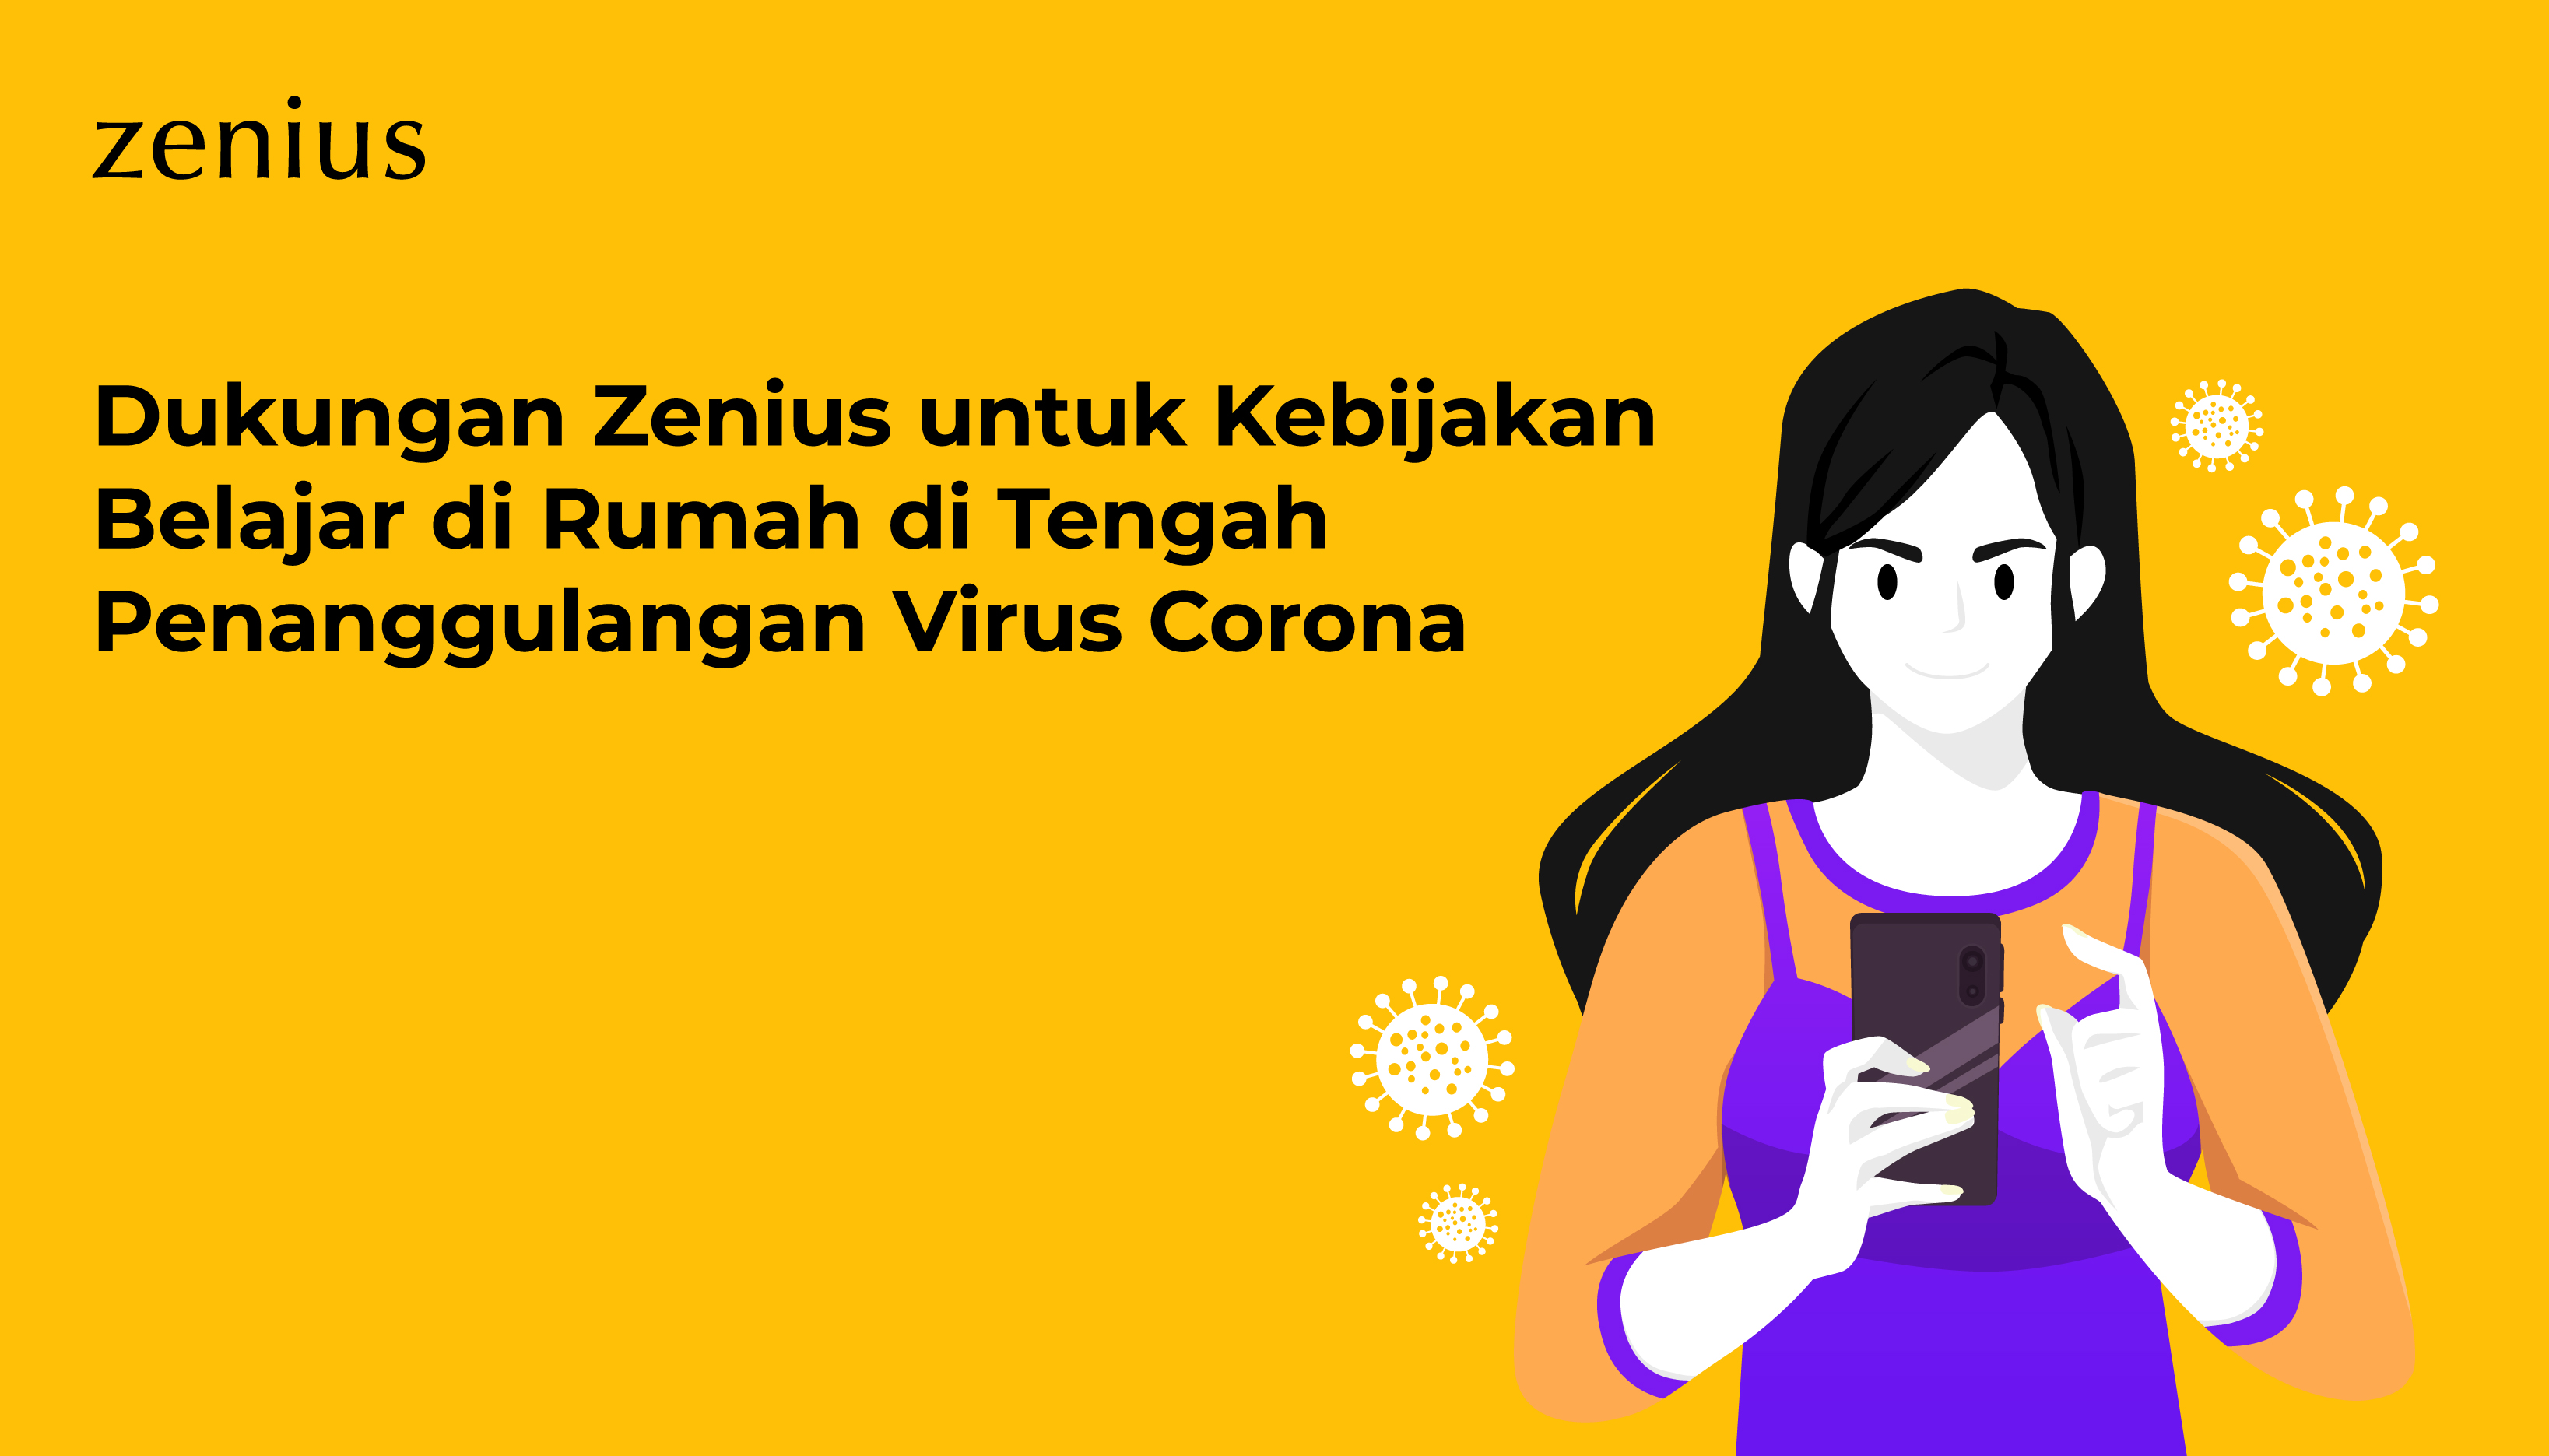 Dukungan Zenius untuk Kebijakan Belajar di Rumah di Tengah Penanggulangan Virus Corona 2